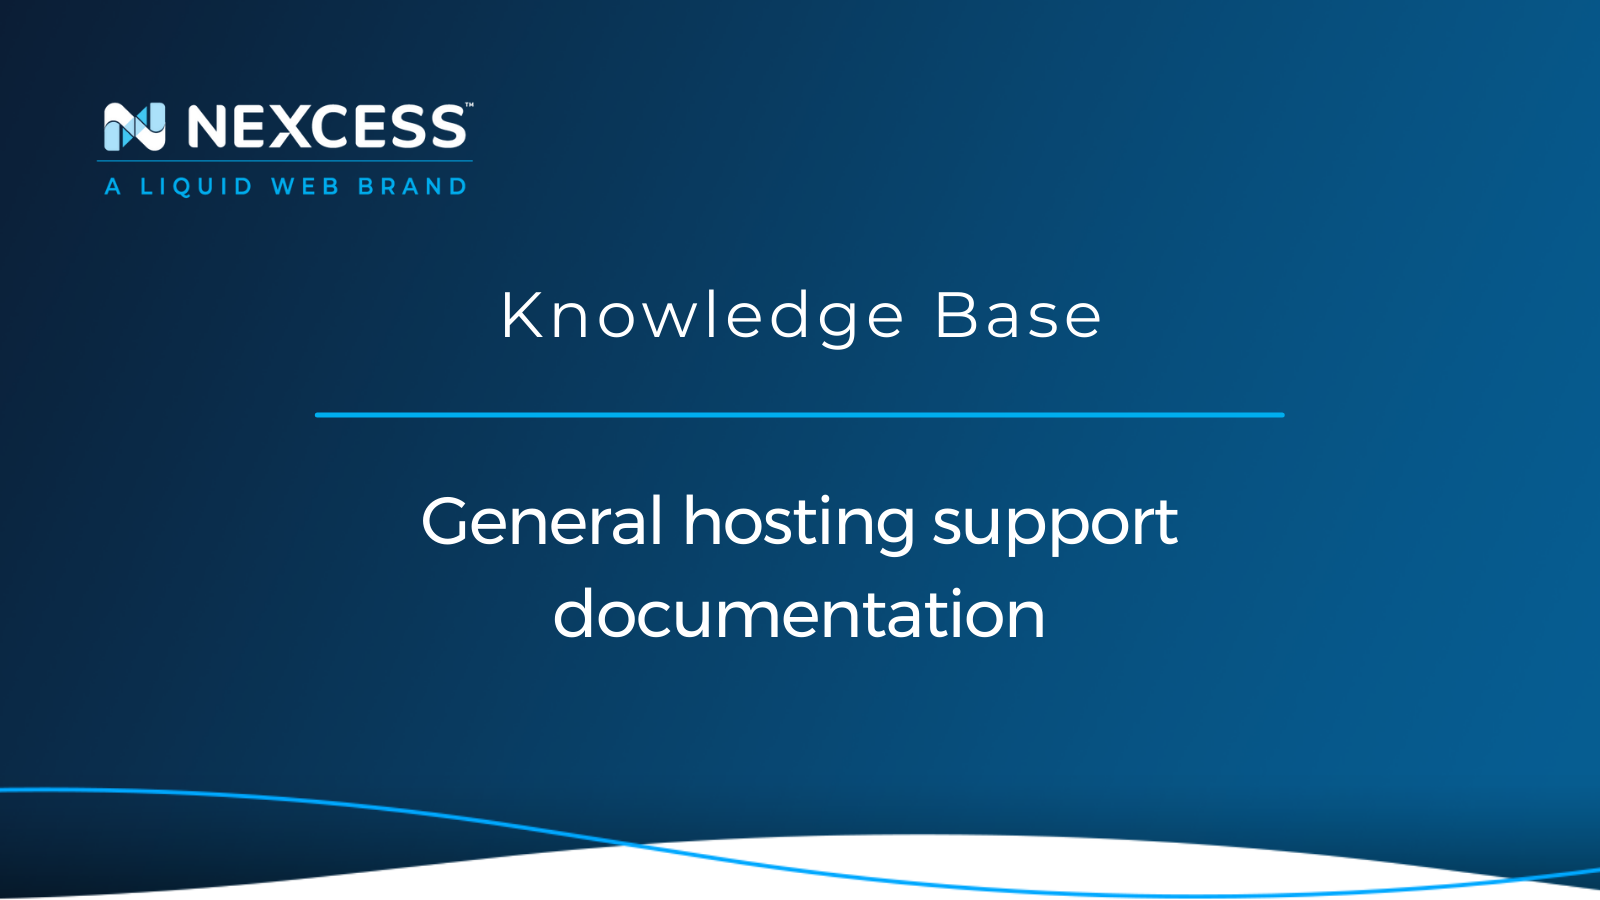 General hosting support documentation